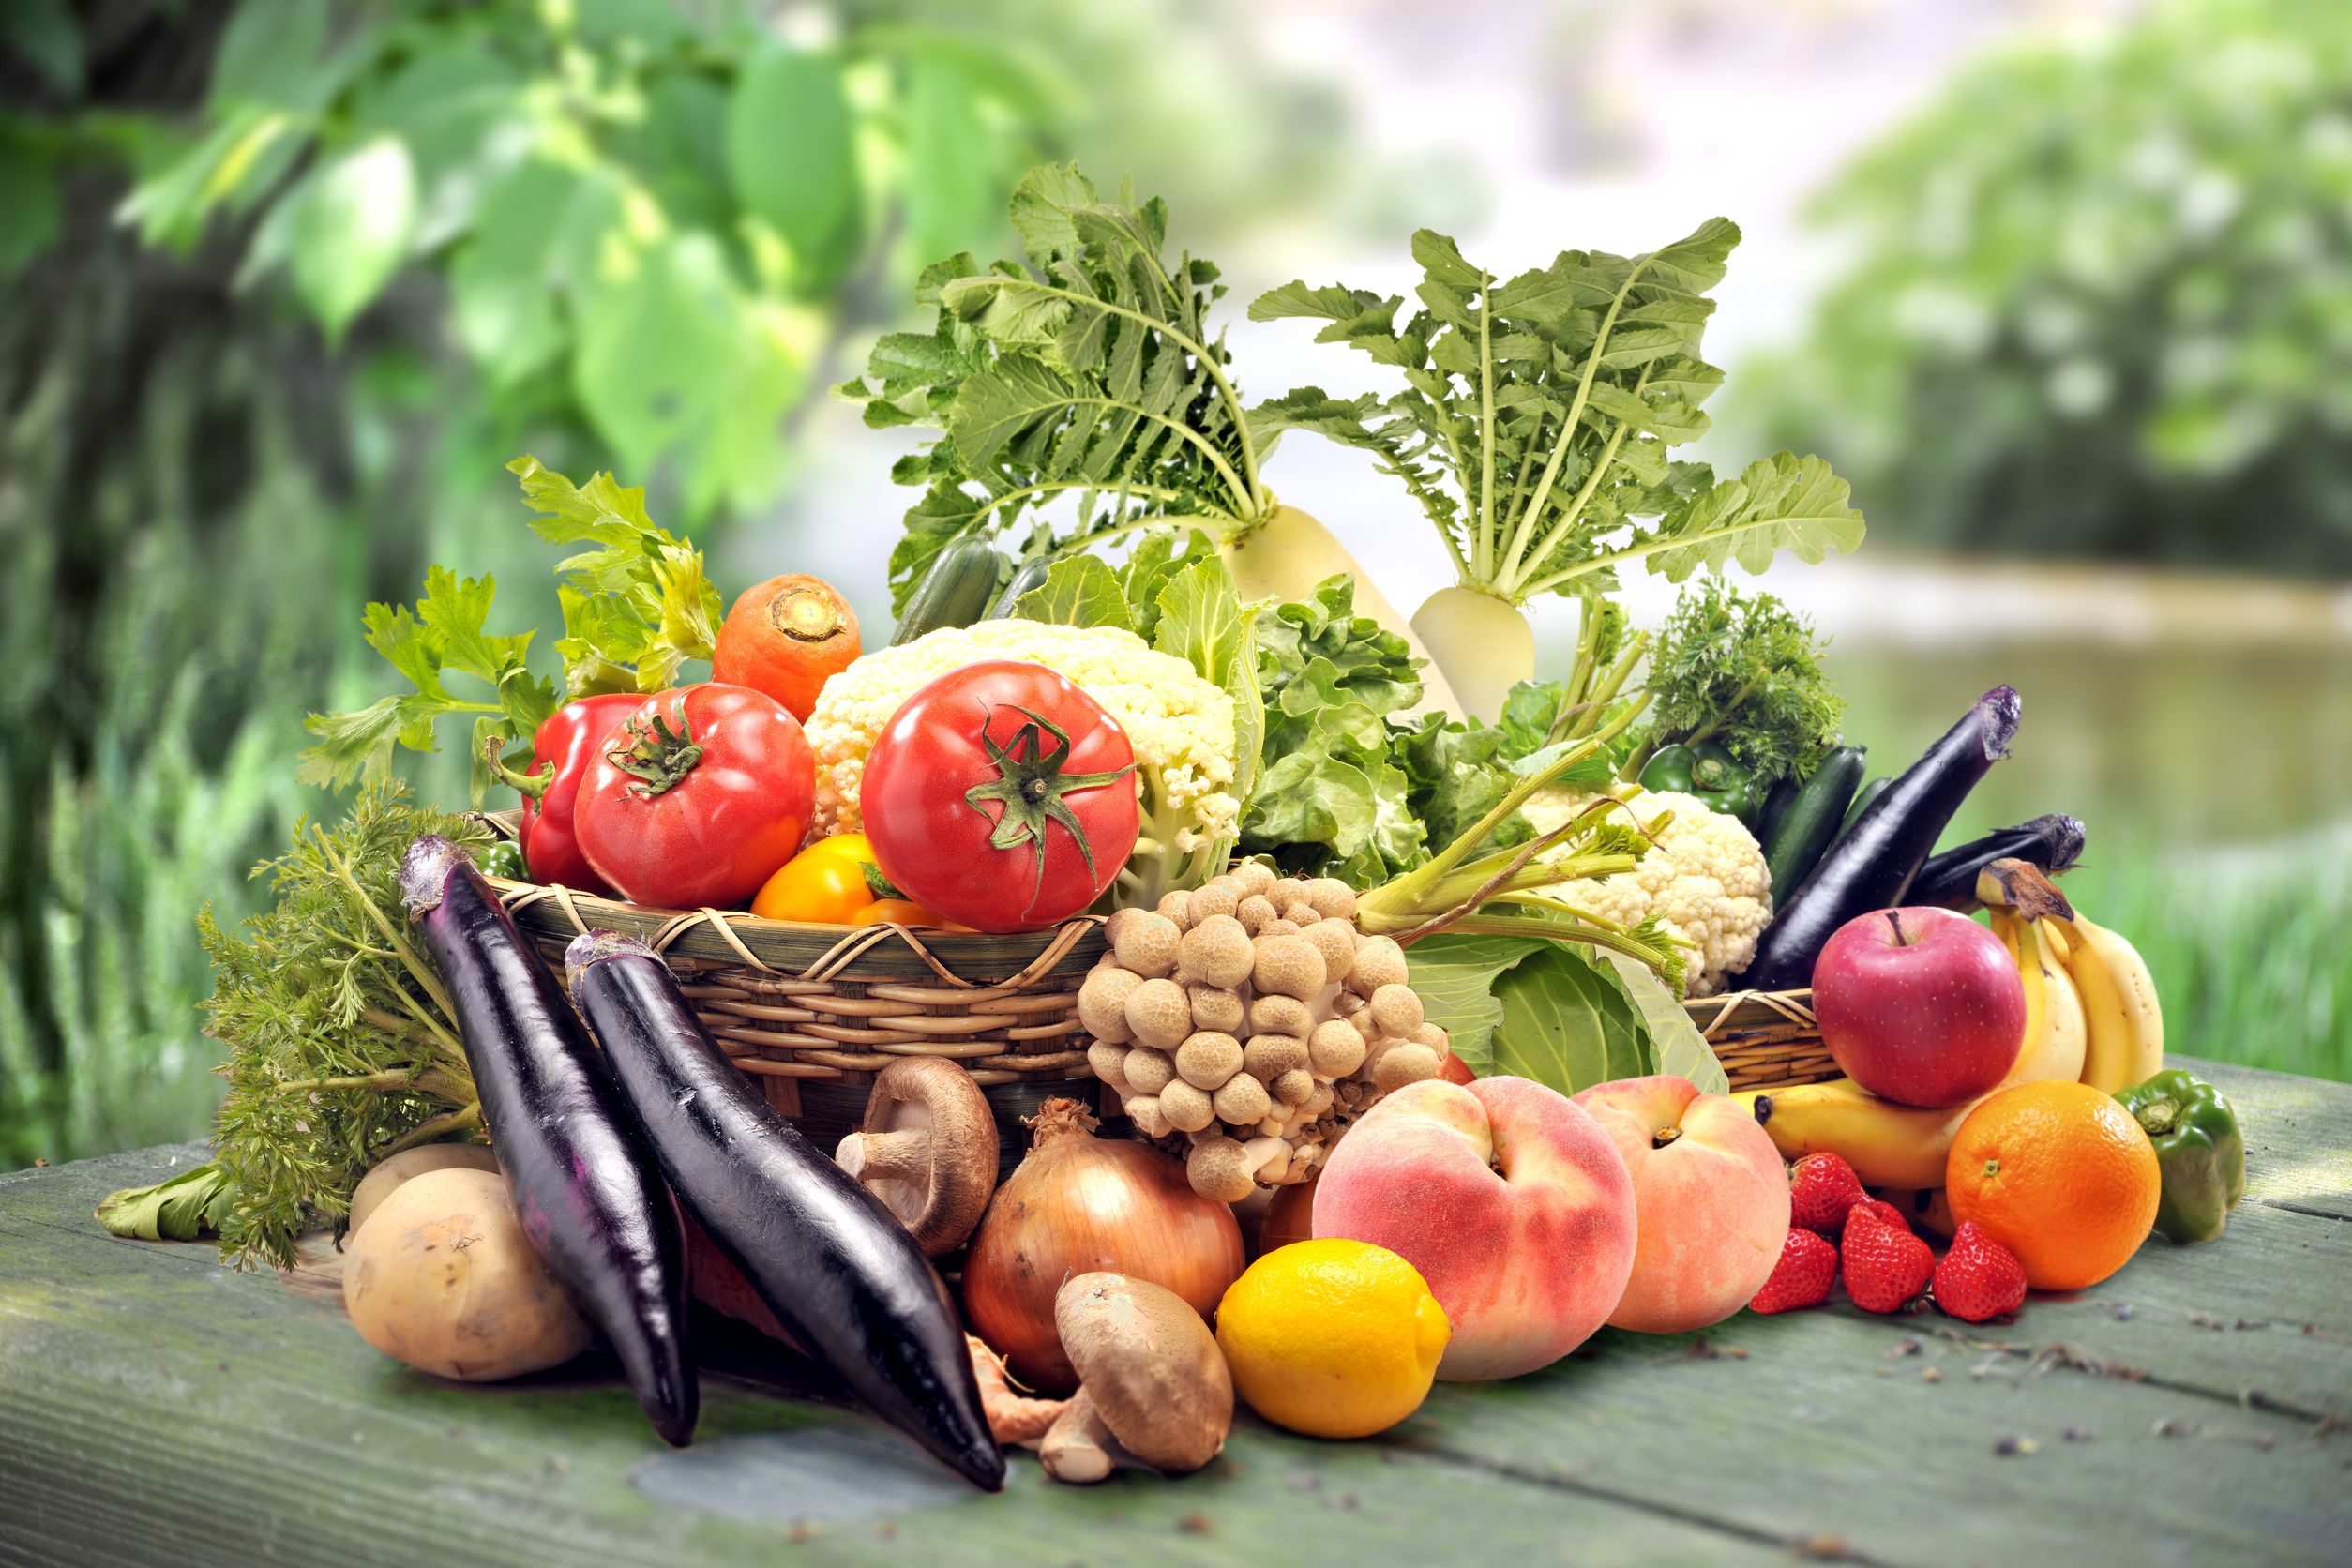 12 овощей и трав. Овощи и фрукты. Овощи, фрукты, ягоды. Овощи фрукты зелень. Свежие овощи и фрукты.